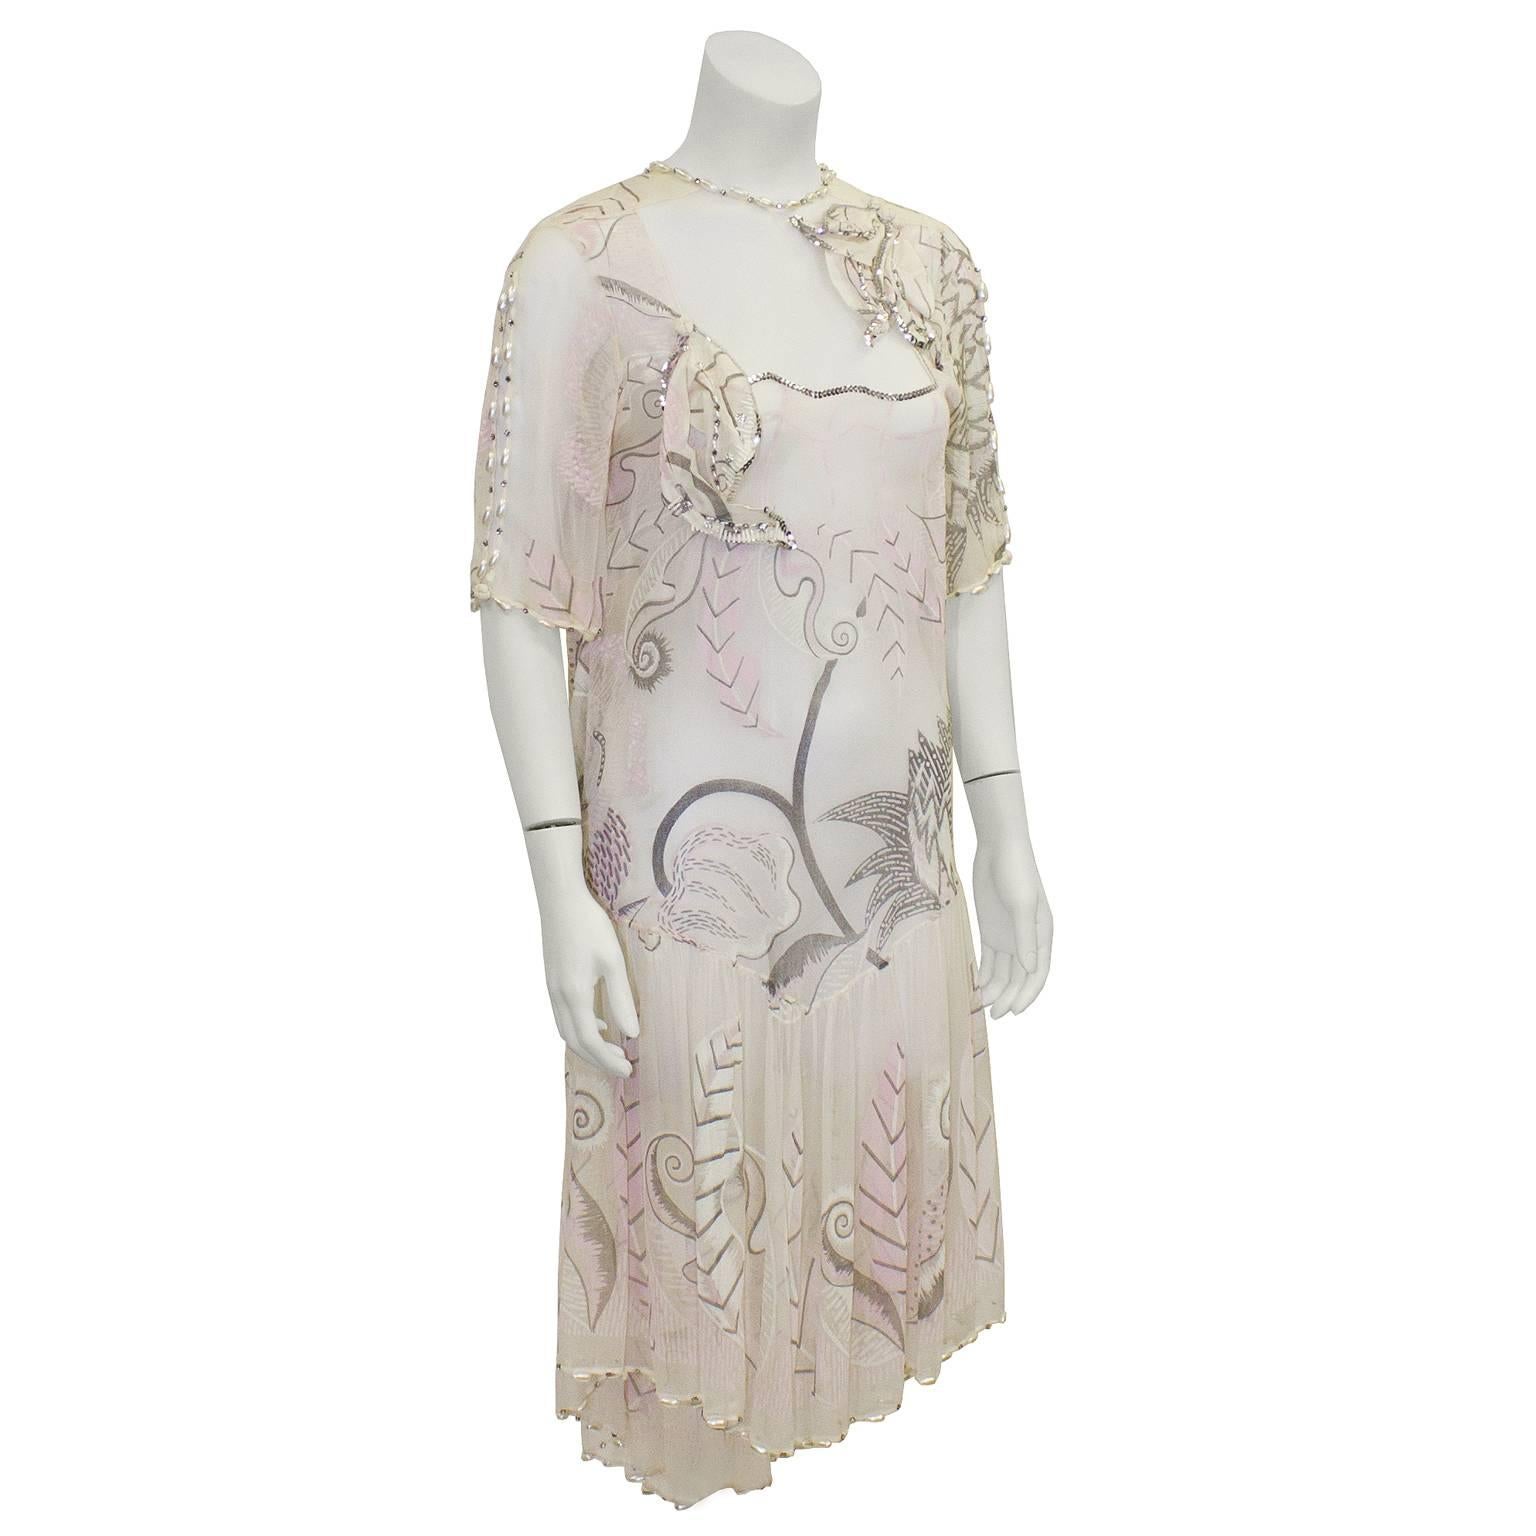 Superbe robe Zandra Rhodes des années 1980 en mousseline de soie rose clair et crème peinte à la main. Tissu transparent sur le décolleté avec des manches courtes. Détails de perles le long de l'encolure, des manches et de l'ourlet. Taille basse,